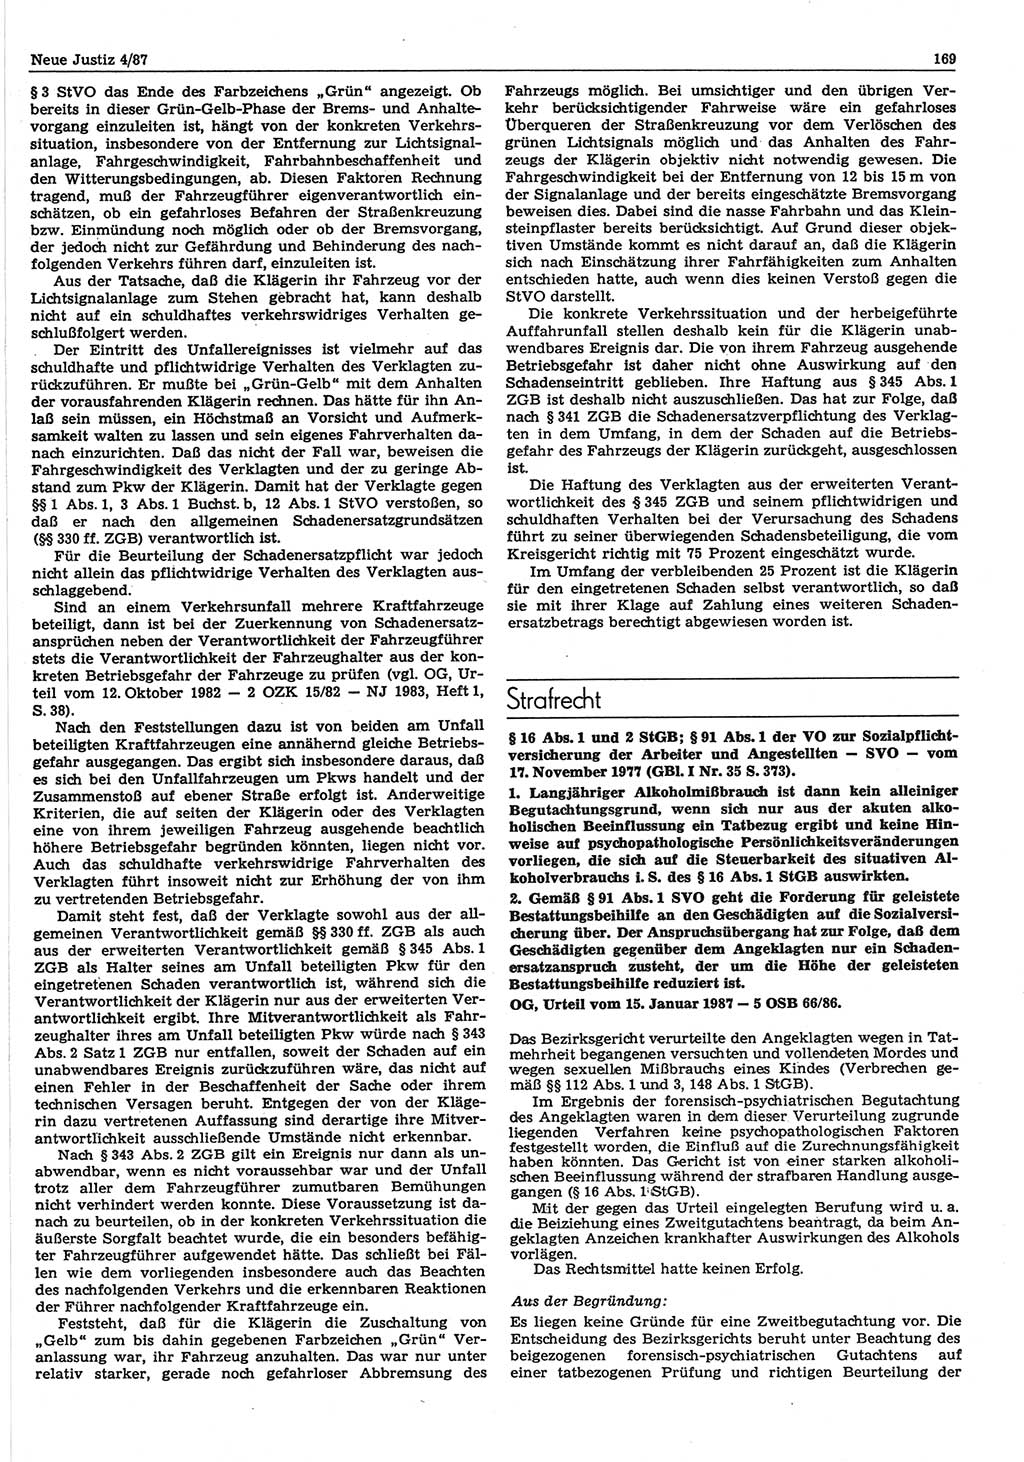 Neue Justiz (NJ), Zeitschrift für sozialistisches Recht und Gesetzlichkeit [Deutsche Demokratische Republik (DDR)], 41. Jahrgang 1987, Seite 169 (NJ DDR 1987, S. 169)